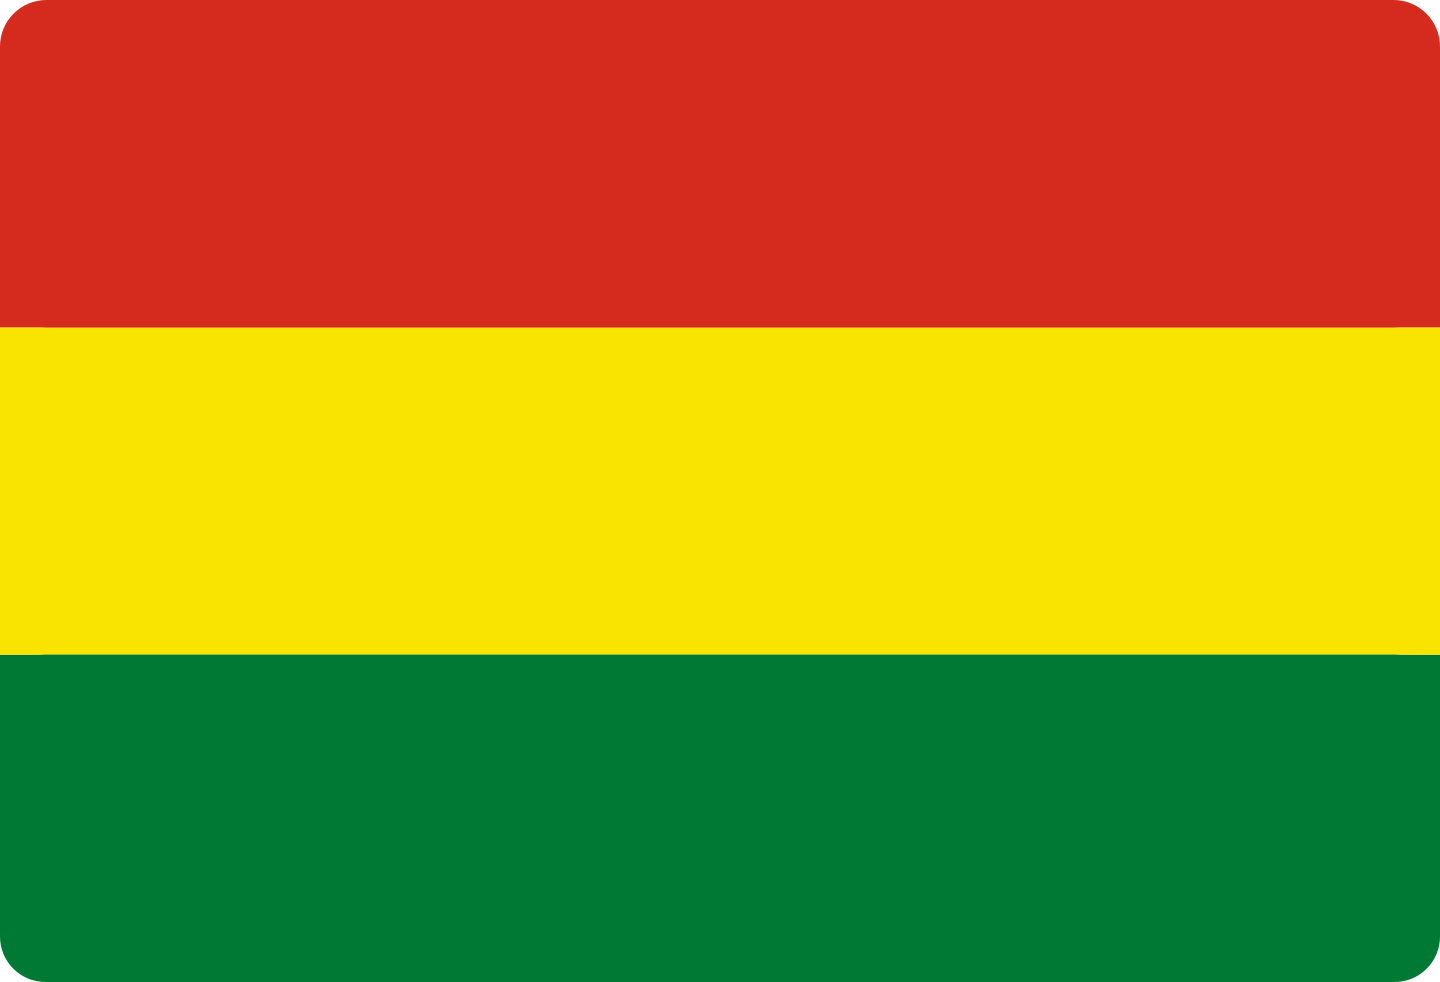 bandeira bolivia flag 2 - Flag of Bolivia